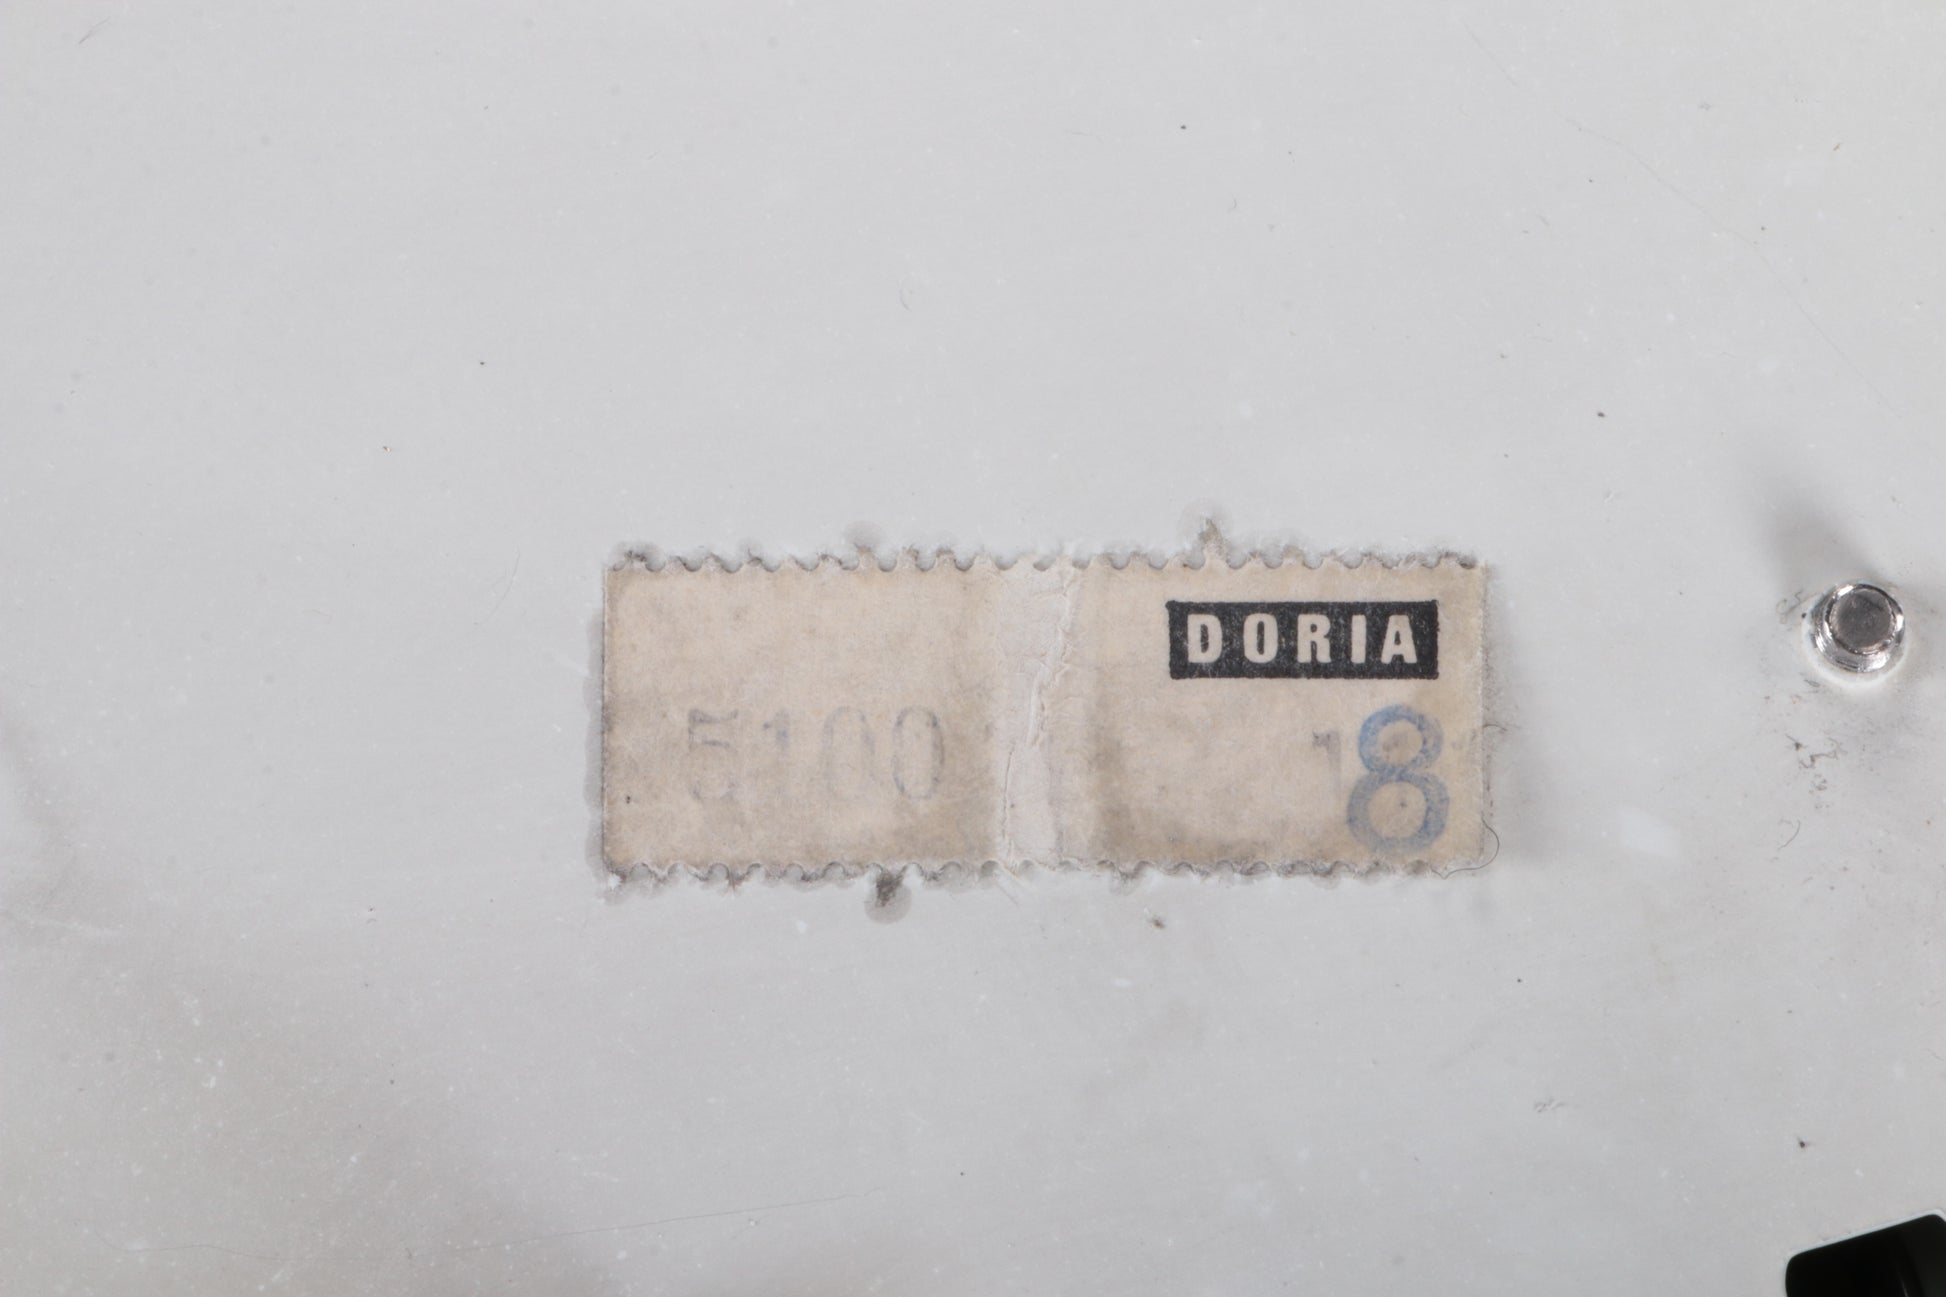 Vintage Plafonniere Doria leuchten met ijsglas en metaal,duitsland 1960s.